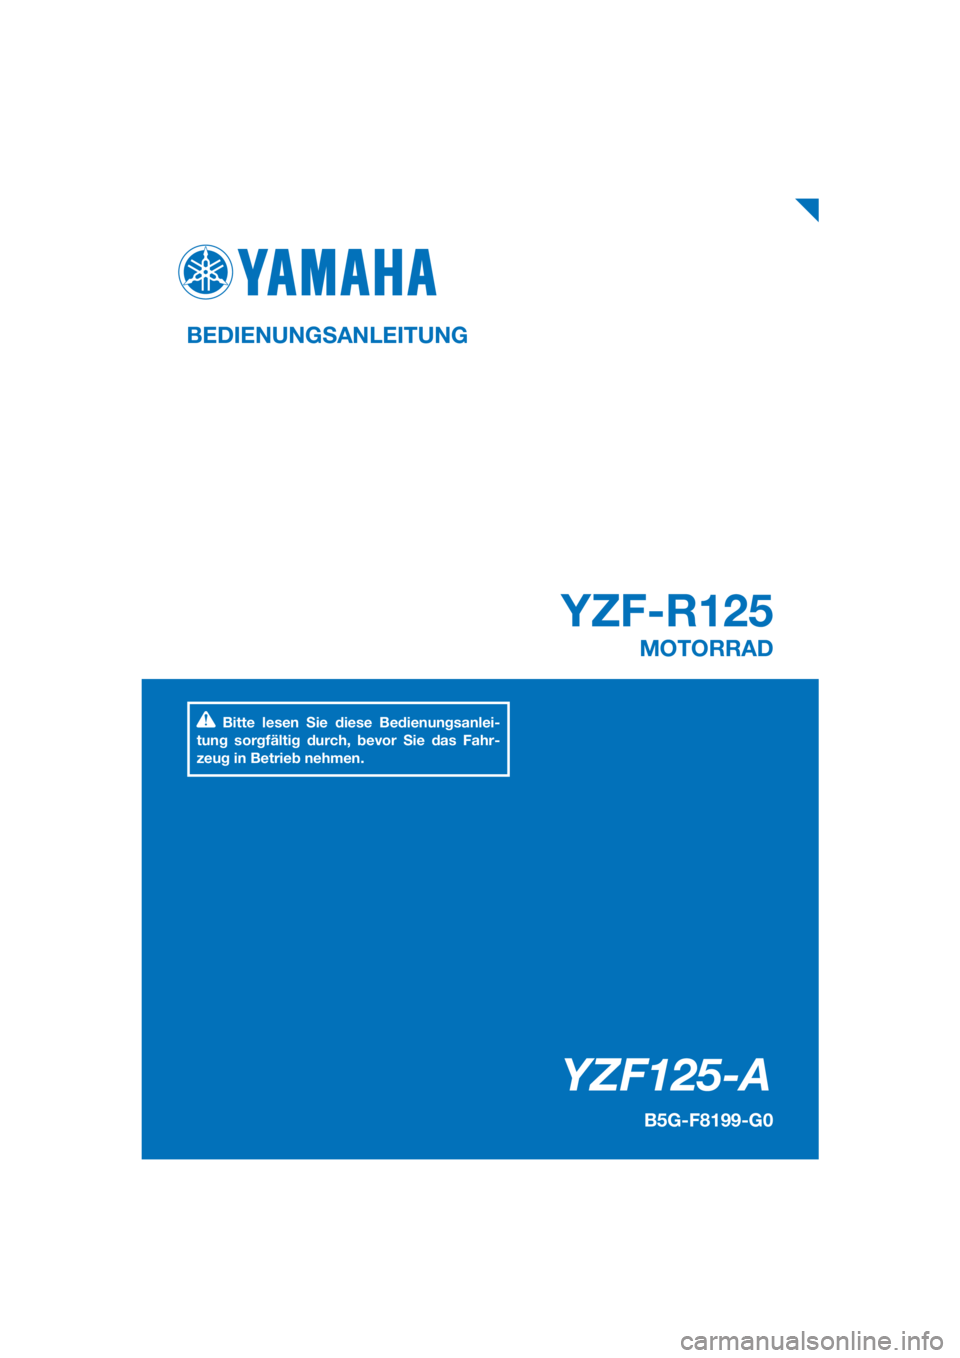 YAMAHA YZF-R125 2019  Betriebsanleitungen (in German) PANTONE285C
YZF125-A
YZF-R125
BEDIENUNGSANLEITUNG
B5G-F8199-G0
MOTORRAD
Bitte lesen Sie diese Bedienungsanlei-
tung sorgfältig durch, bevor Sie das Fahr-
zeug in Betrieb nehmen.
[German  (G)] 